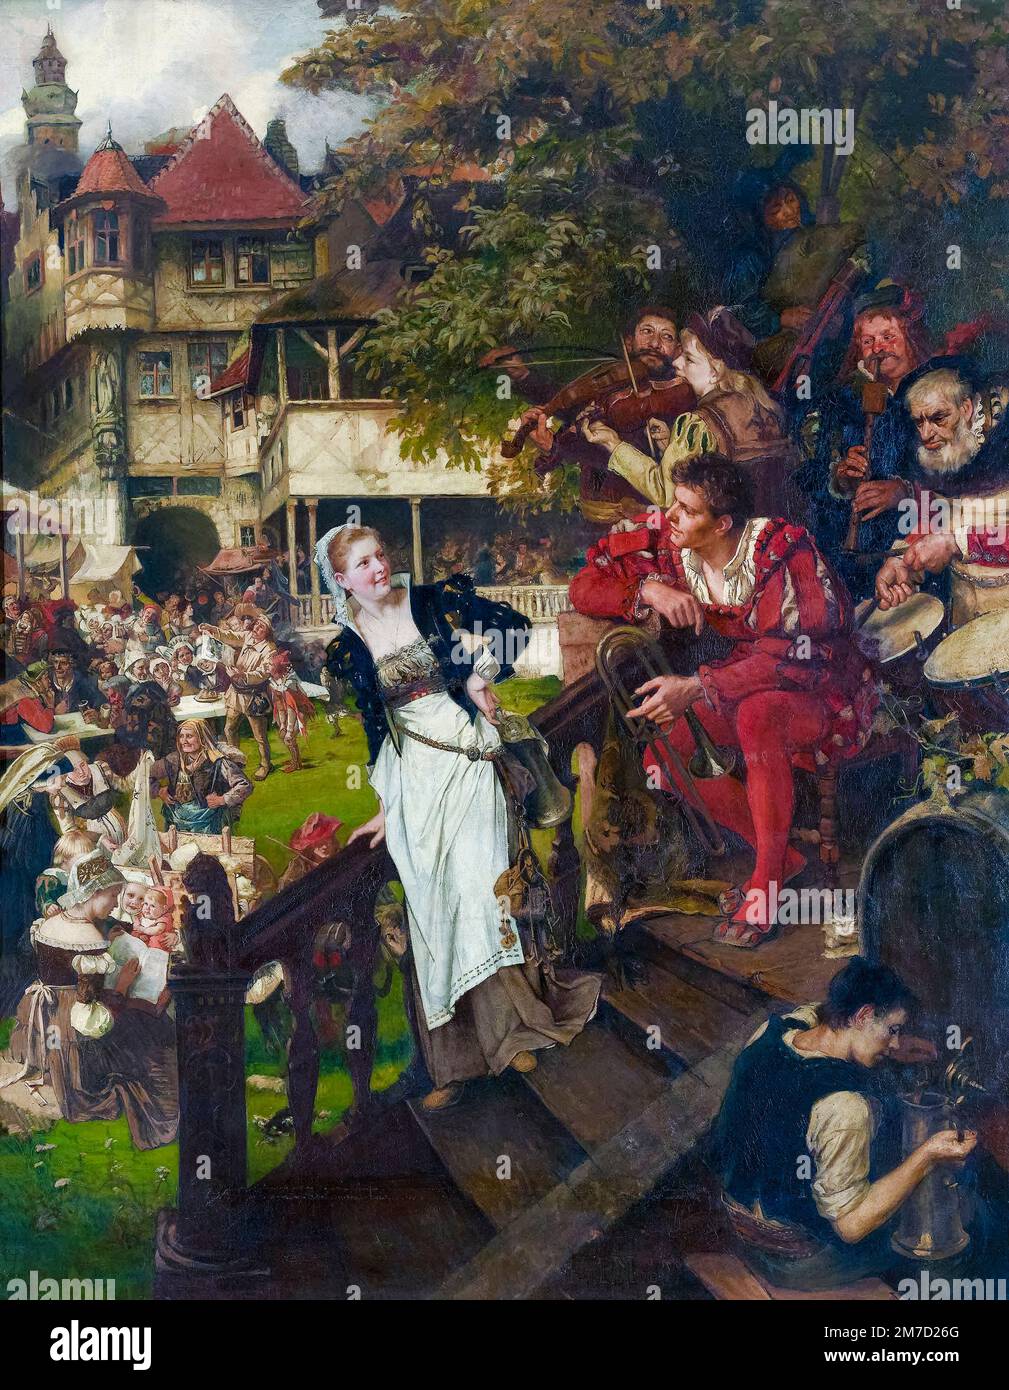 Paula Monjé, allemande, Folk Festival, dans le, 16th siècle, peinture à l'huile sur toile, 1883 Banque D'Images